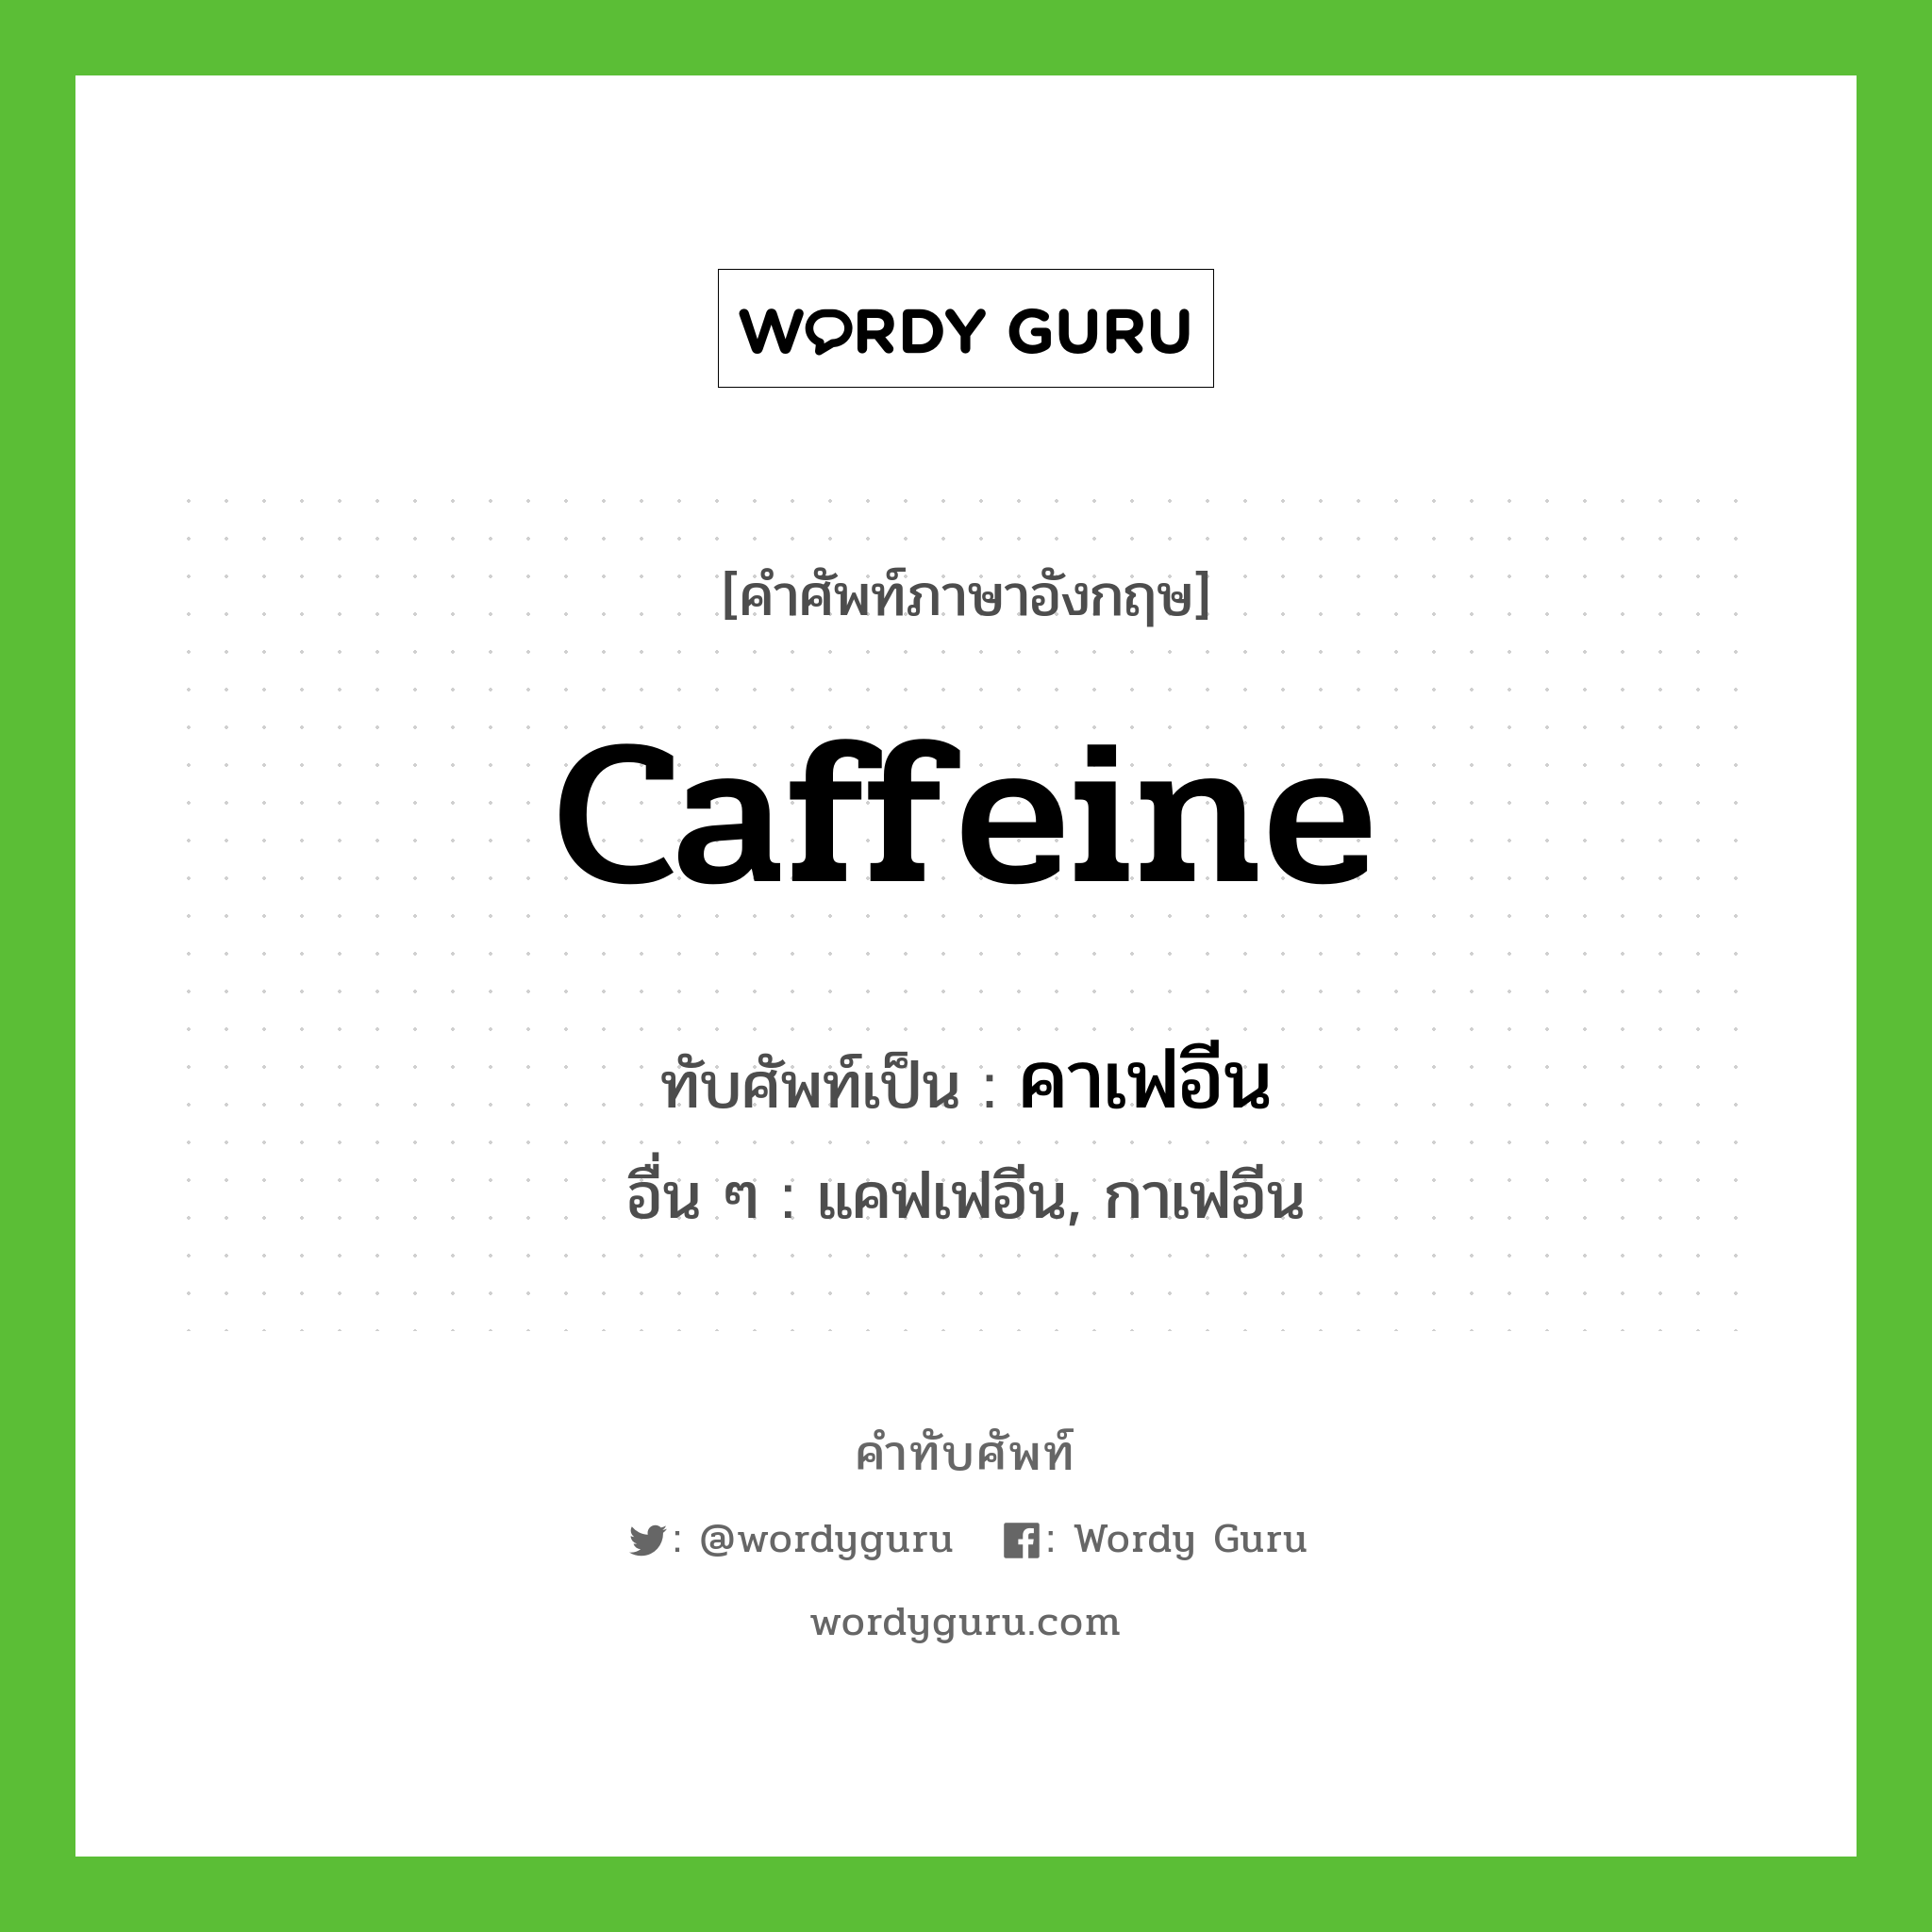 caffeine เขียนเป็นคำไทยว่าอะไร?, คำศัพท์ภาษาอังกฤษ caffeine ทับศัพท์เป็น คาเฟอีน อื่น ๆ แคฟเฟอีน, กาเฟอีน